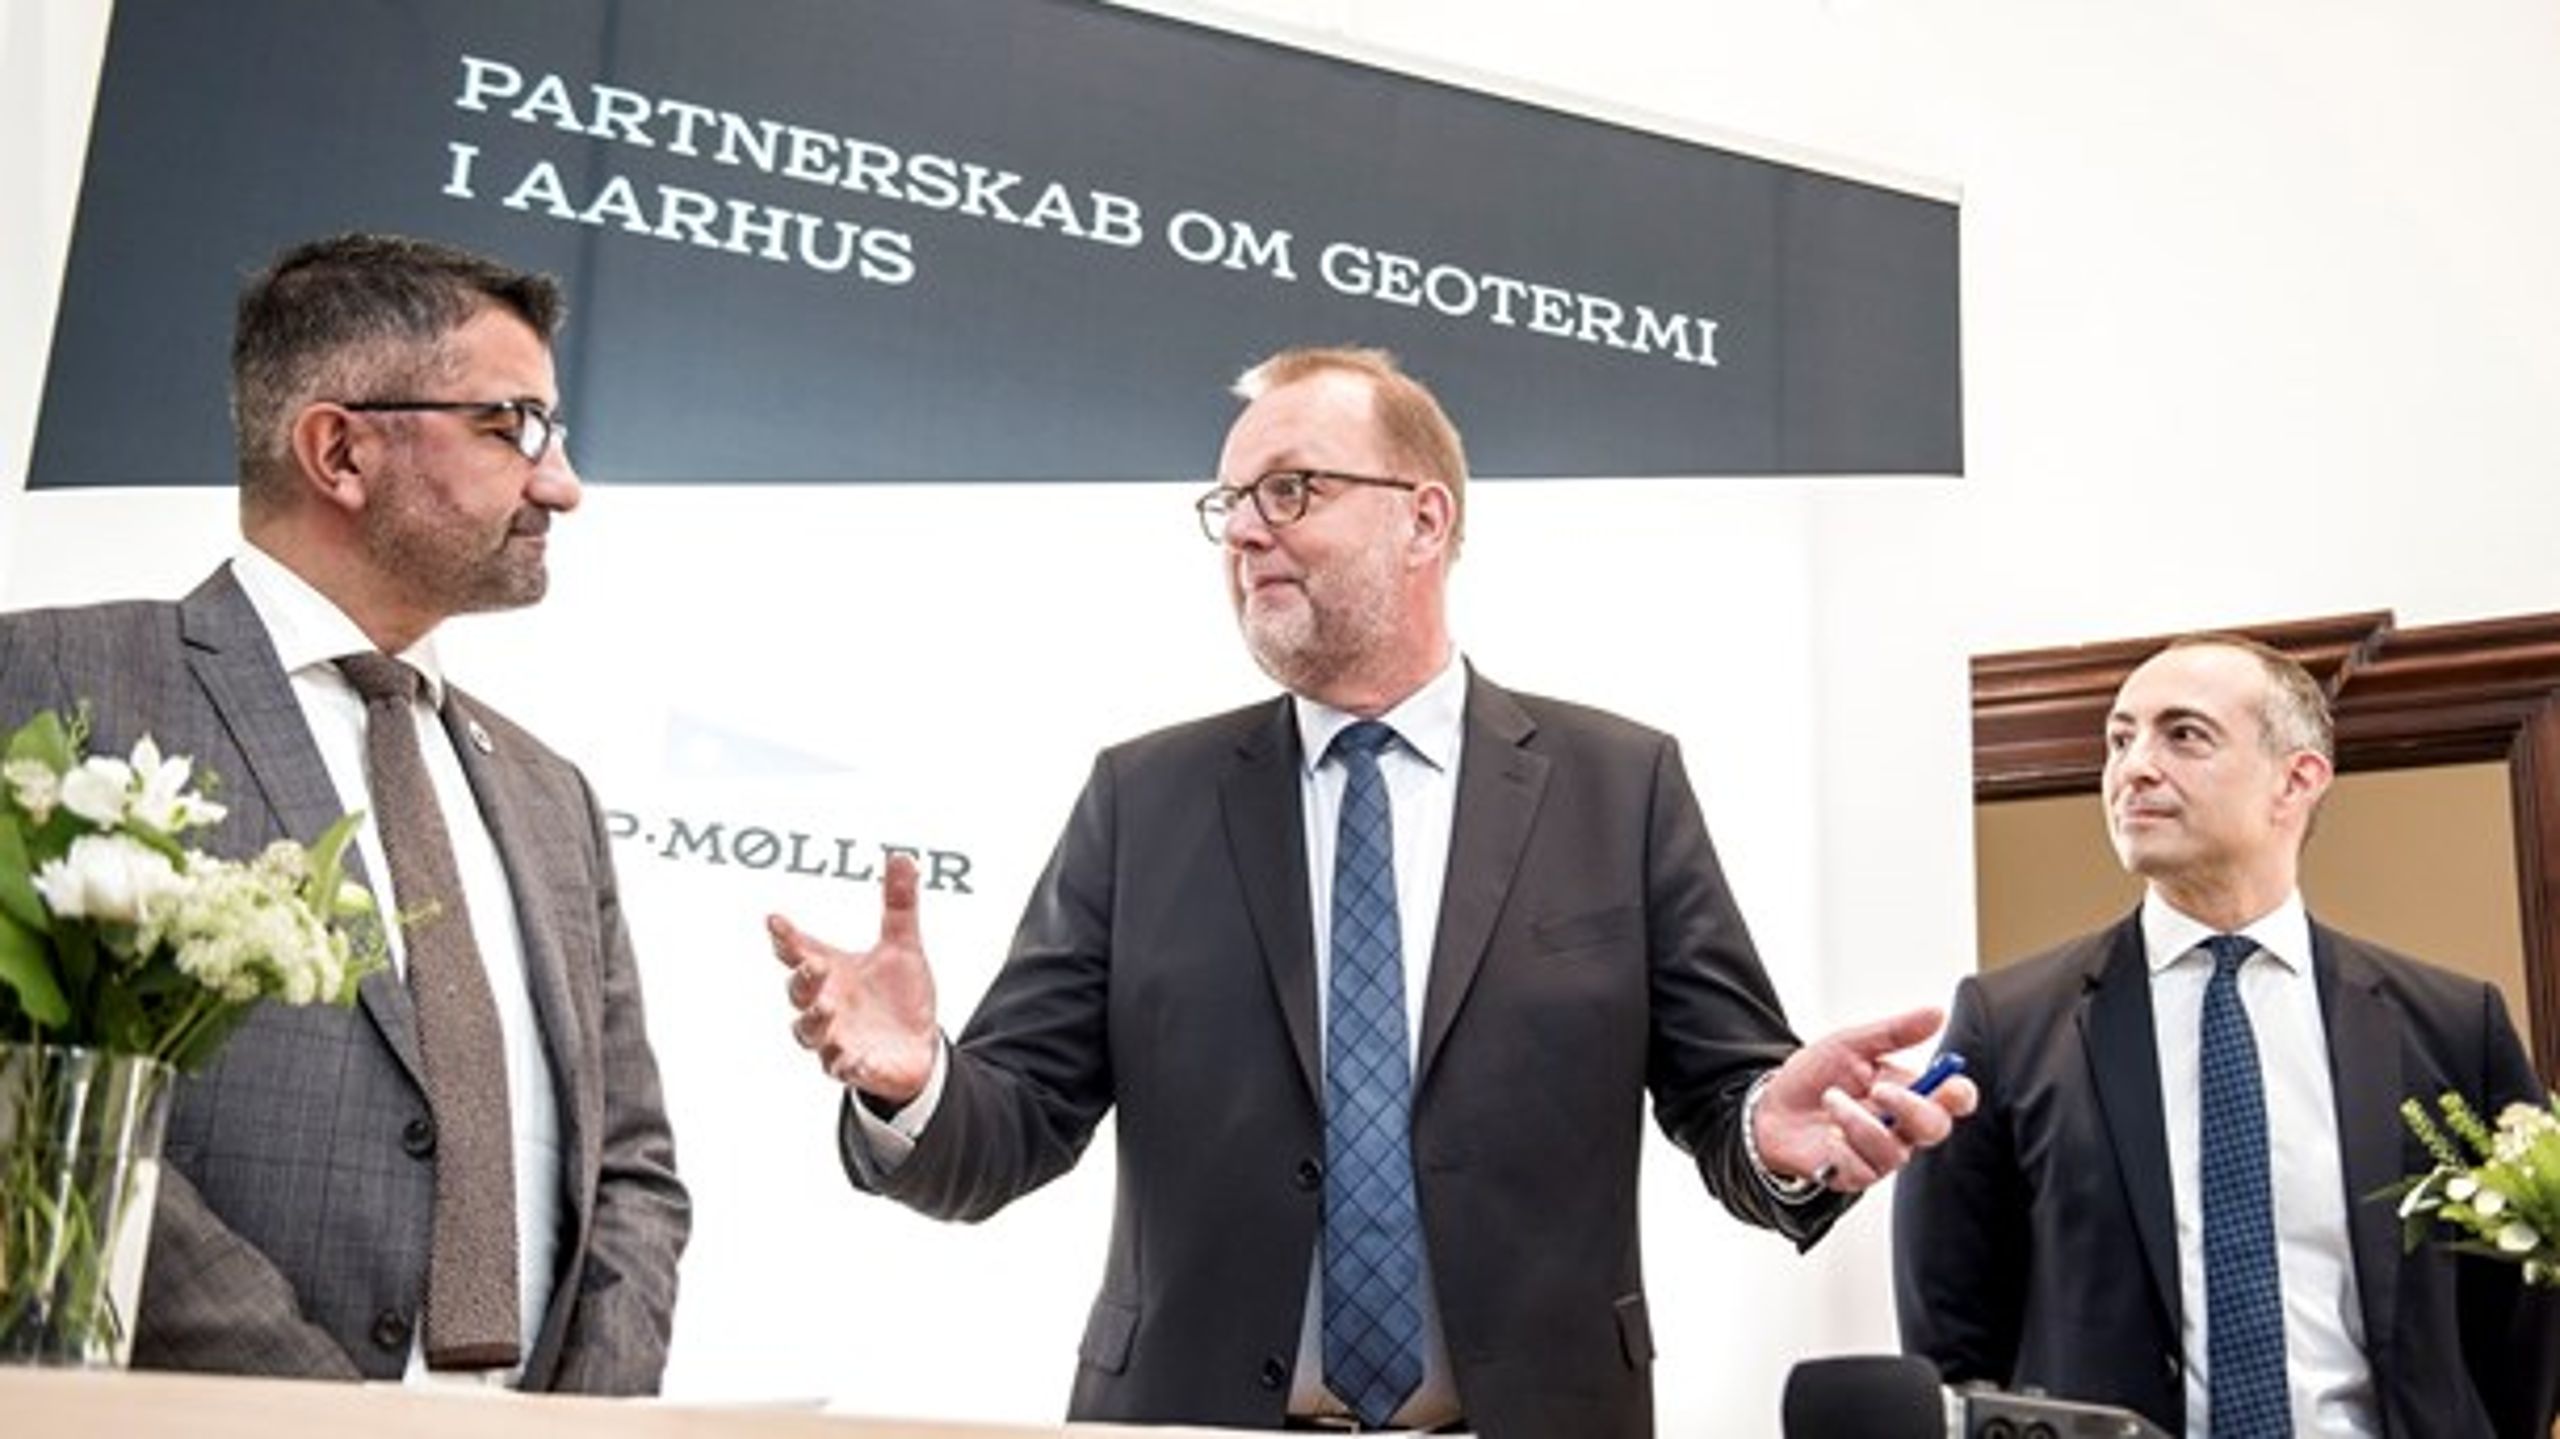 Energiminister Lars Chr. Lilleholt (V) har udpeget medlemmer til ekspertråd om geotermi. Her er han ved et pressemøde fra oktober 2018, hvor Aarhus Kommune og A.P. Møller Holding indgik en aftale om geotermi.